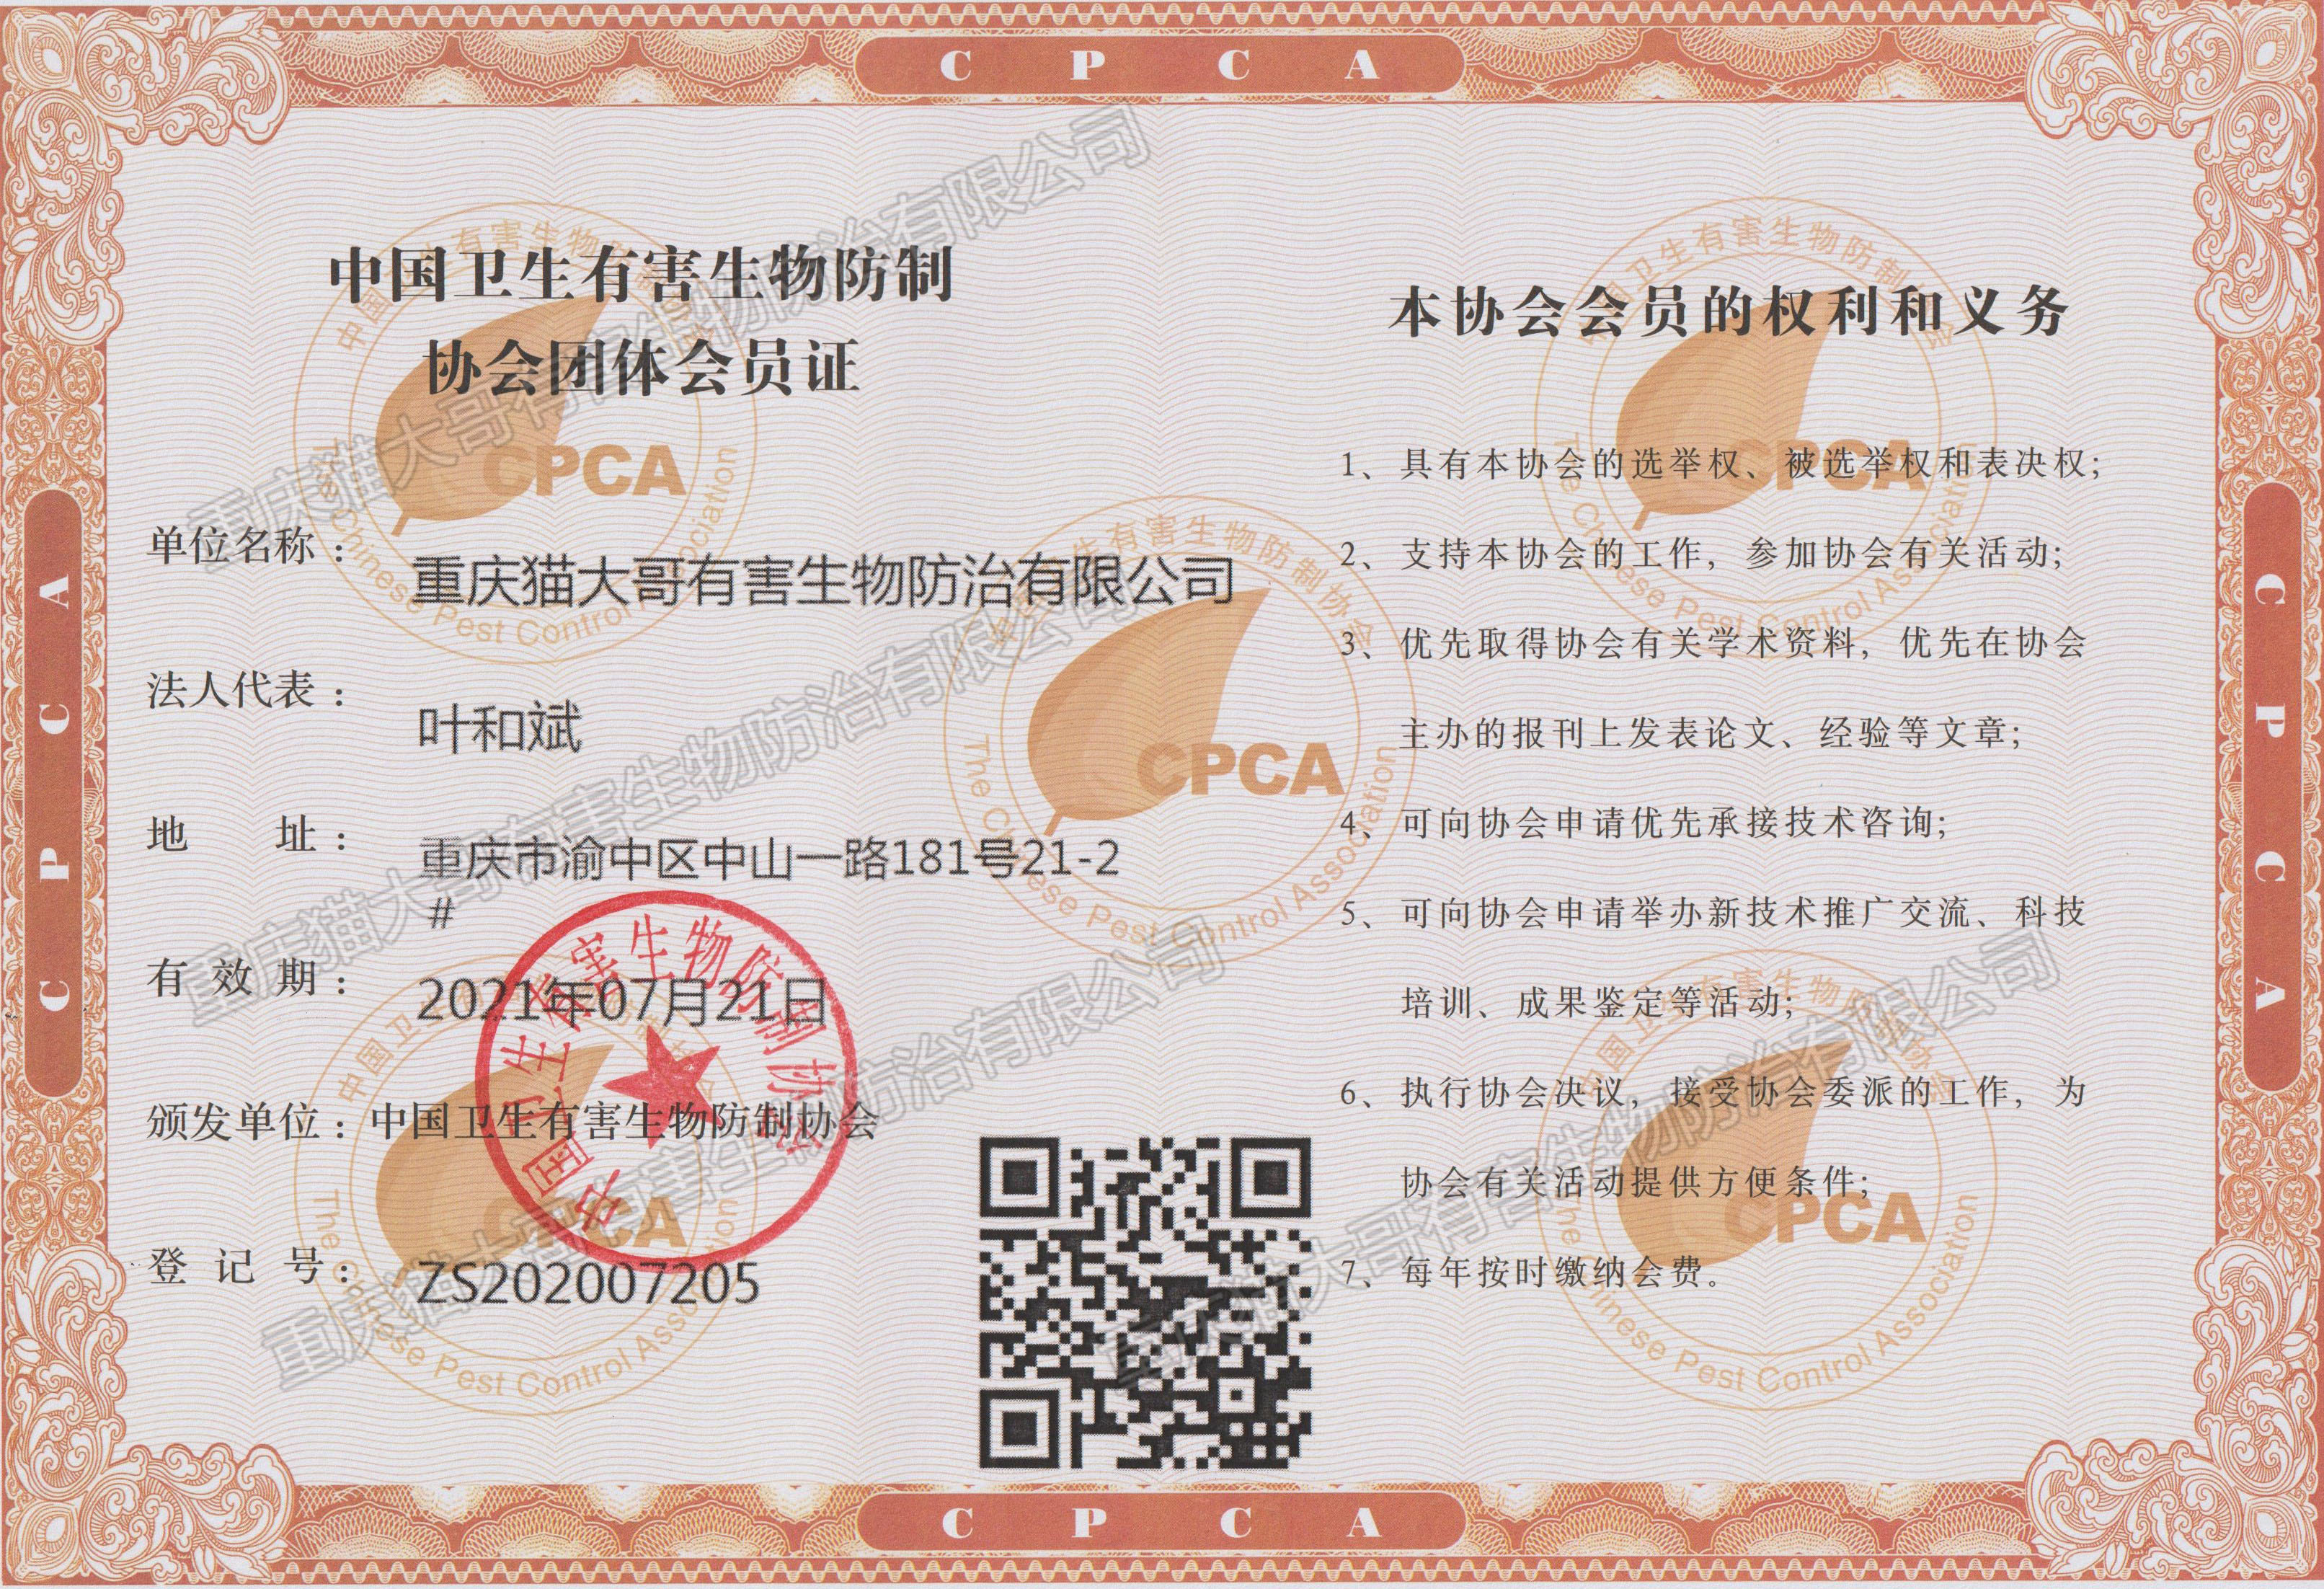 中国卫生有害生物防制协会团体会员证